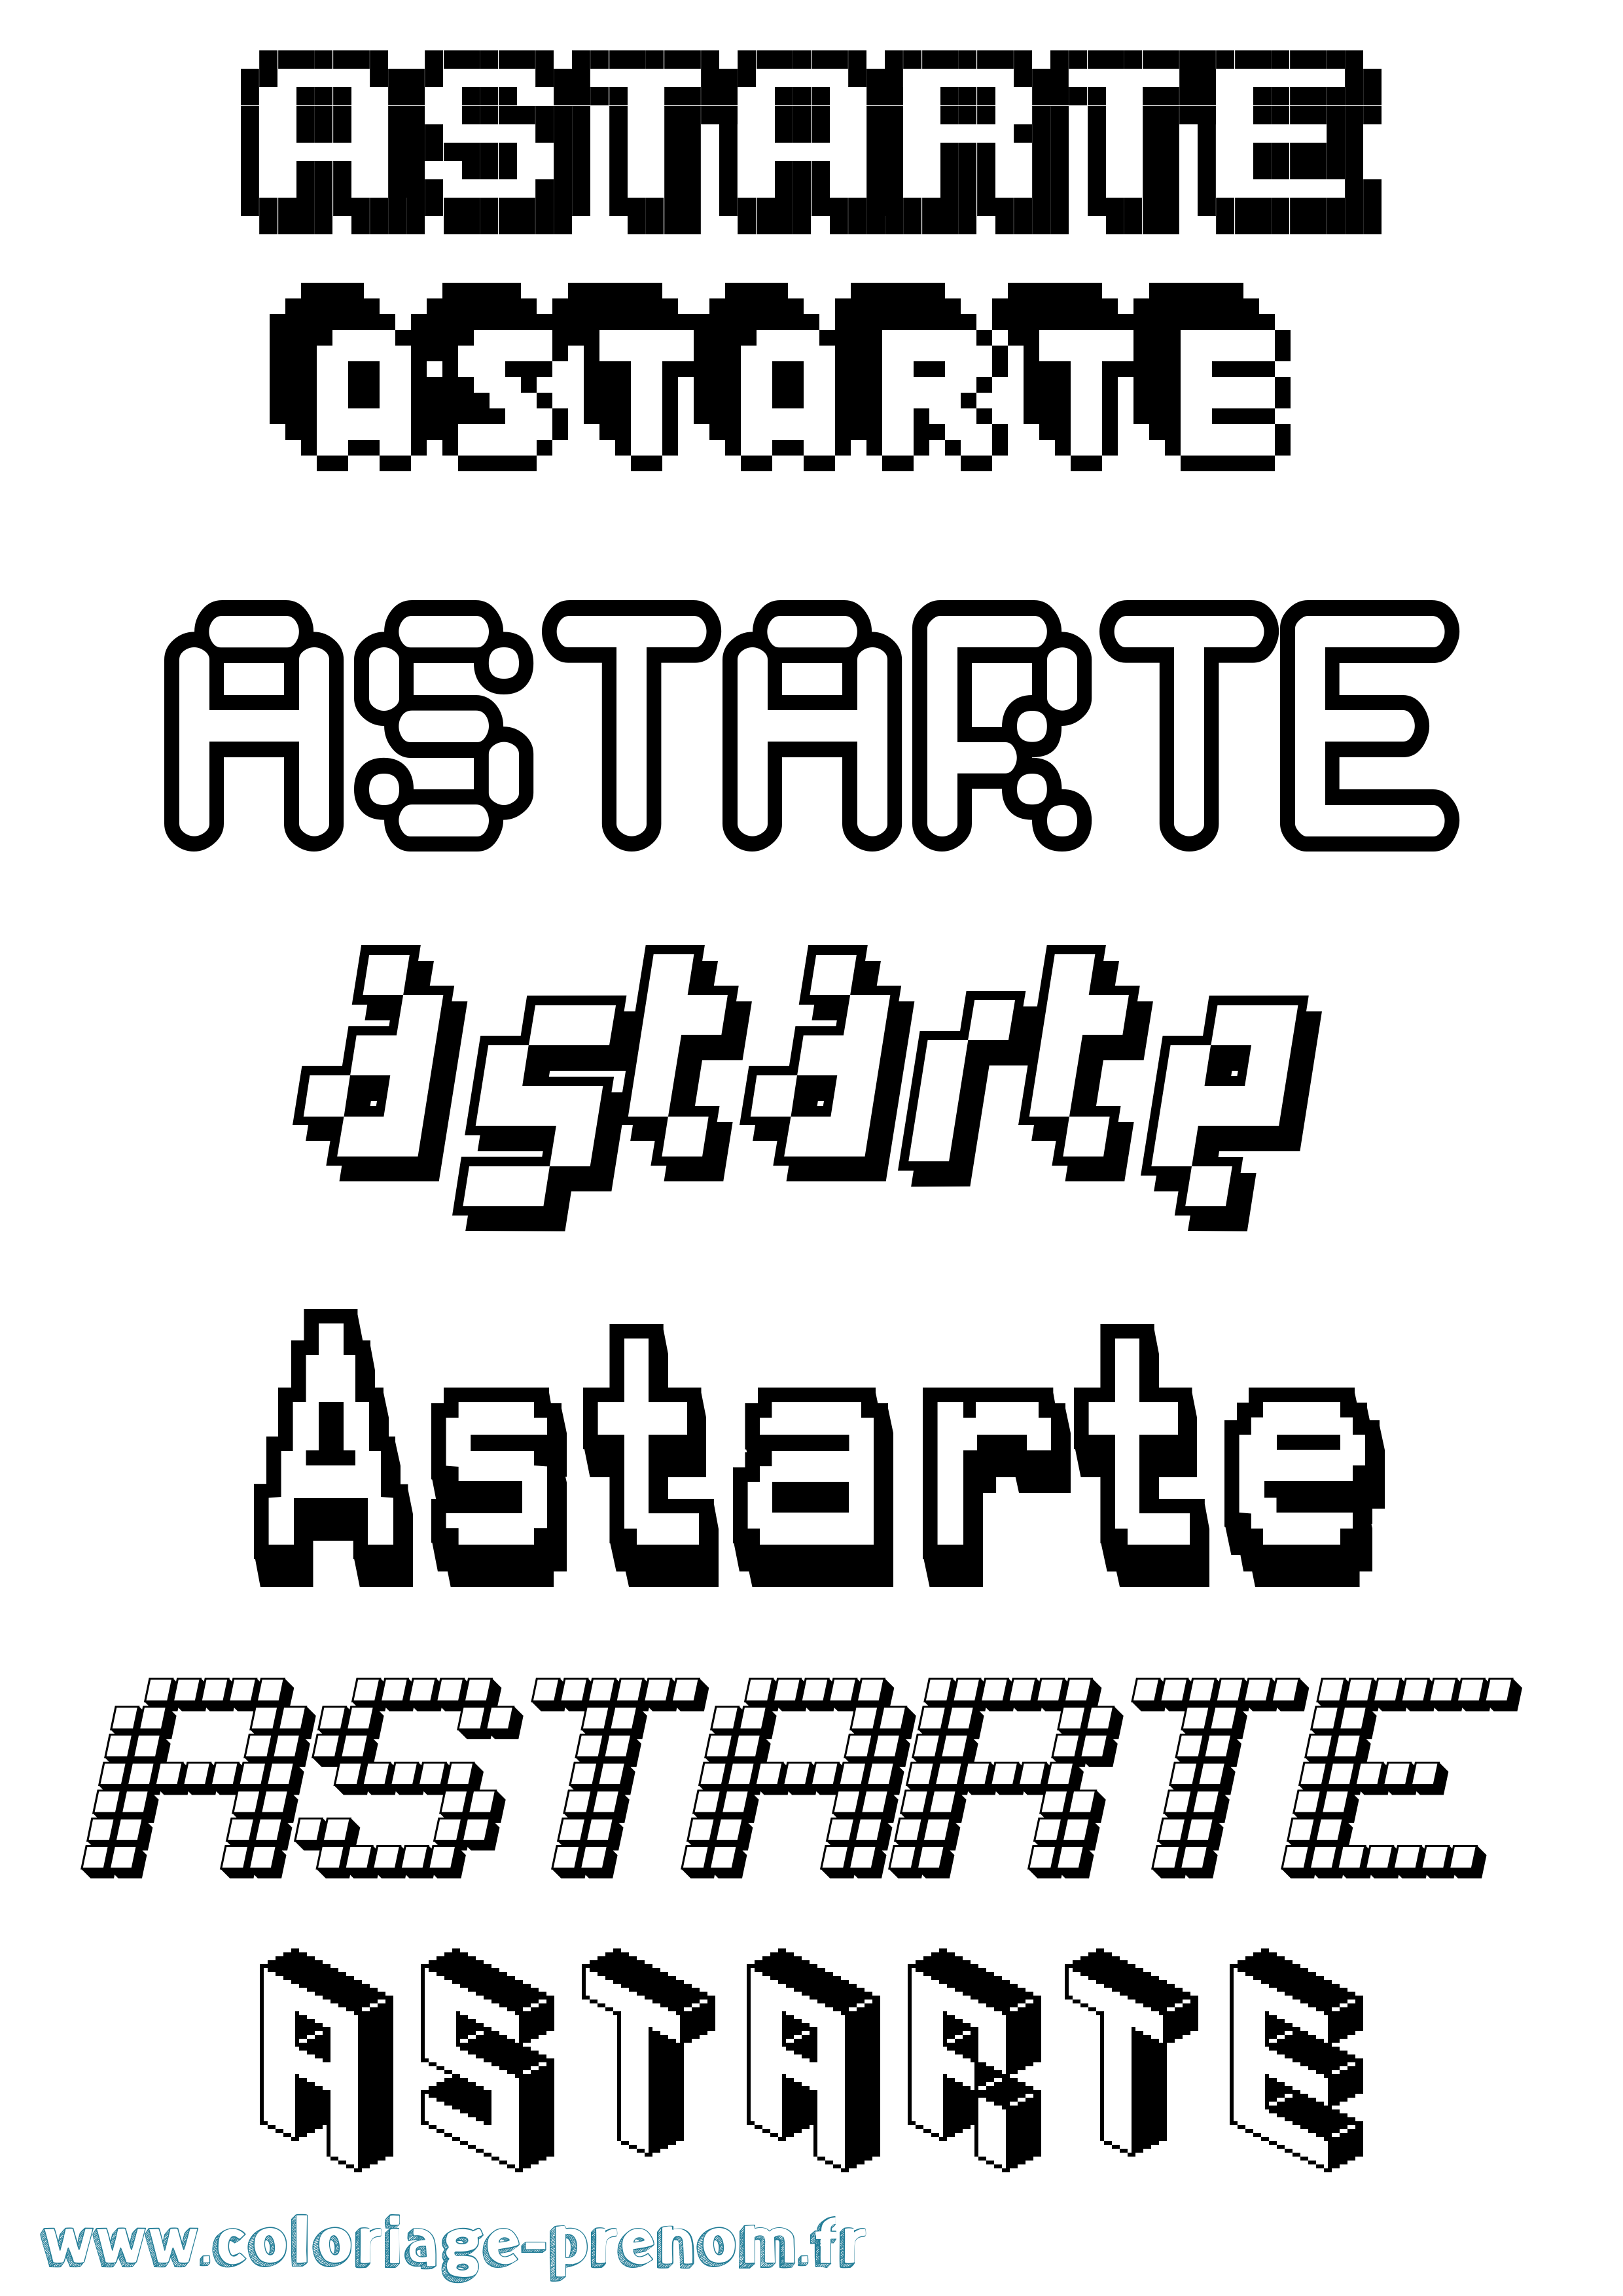 Coloriage prénom Astarte Pixel